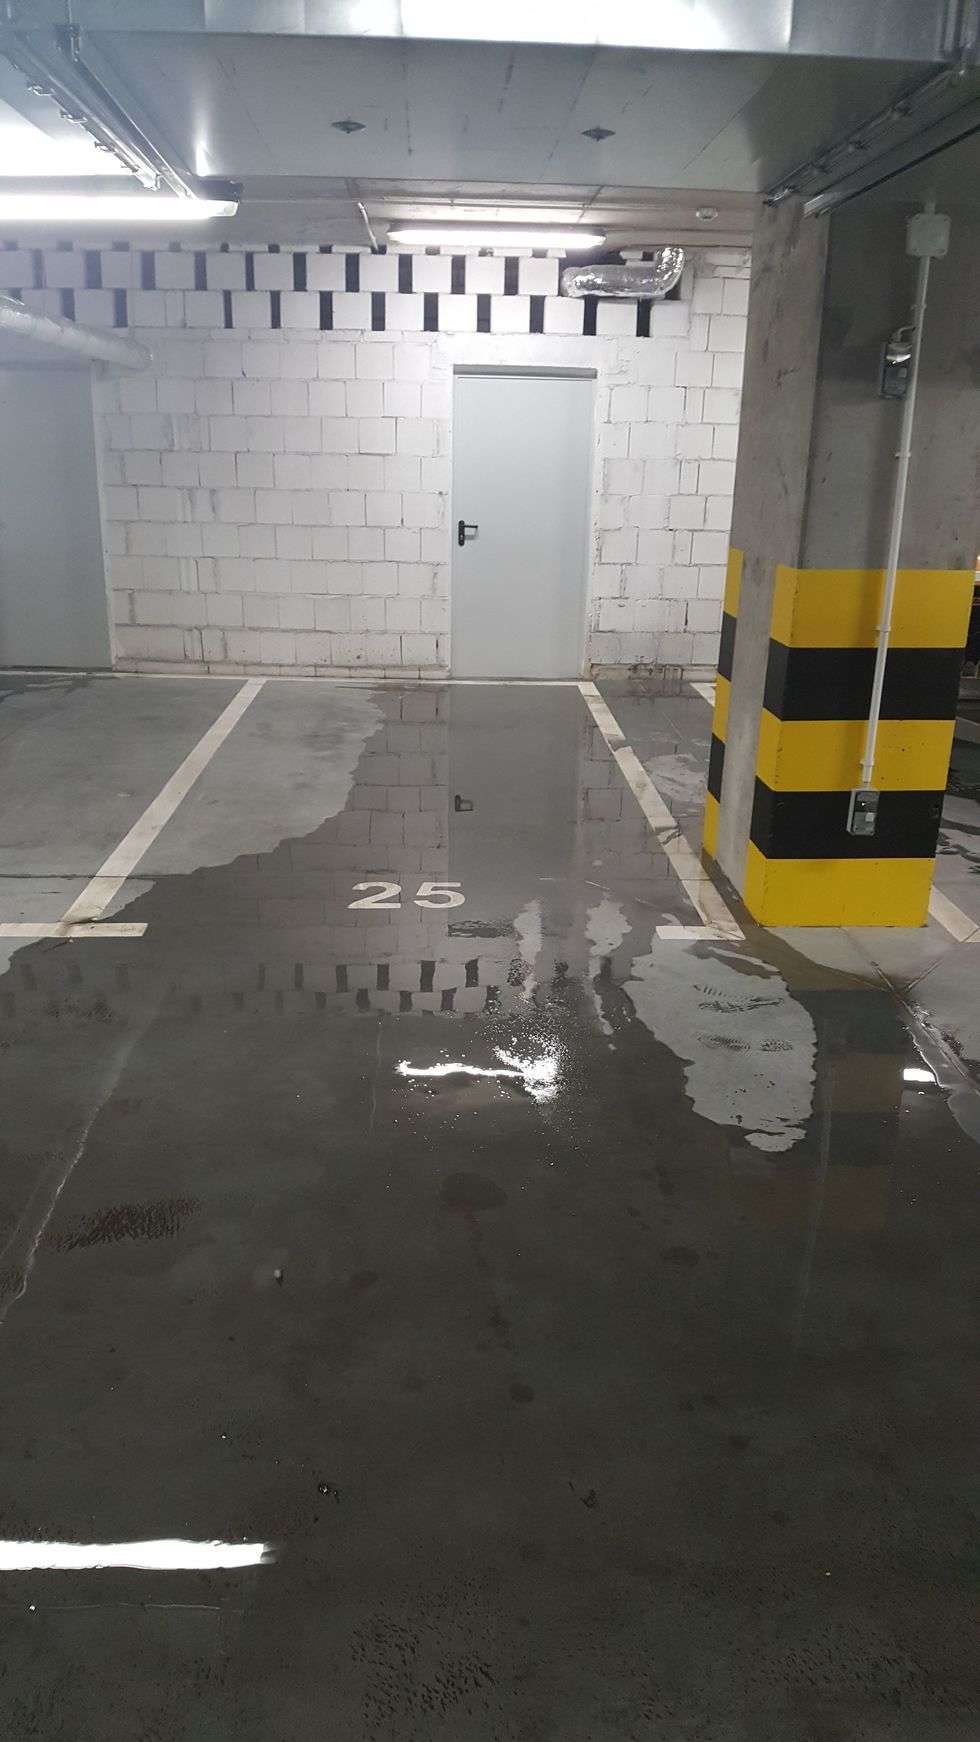  <p>Woda po raz kolejny podmyła parking podziemny</p>